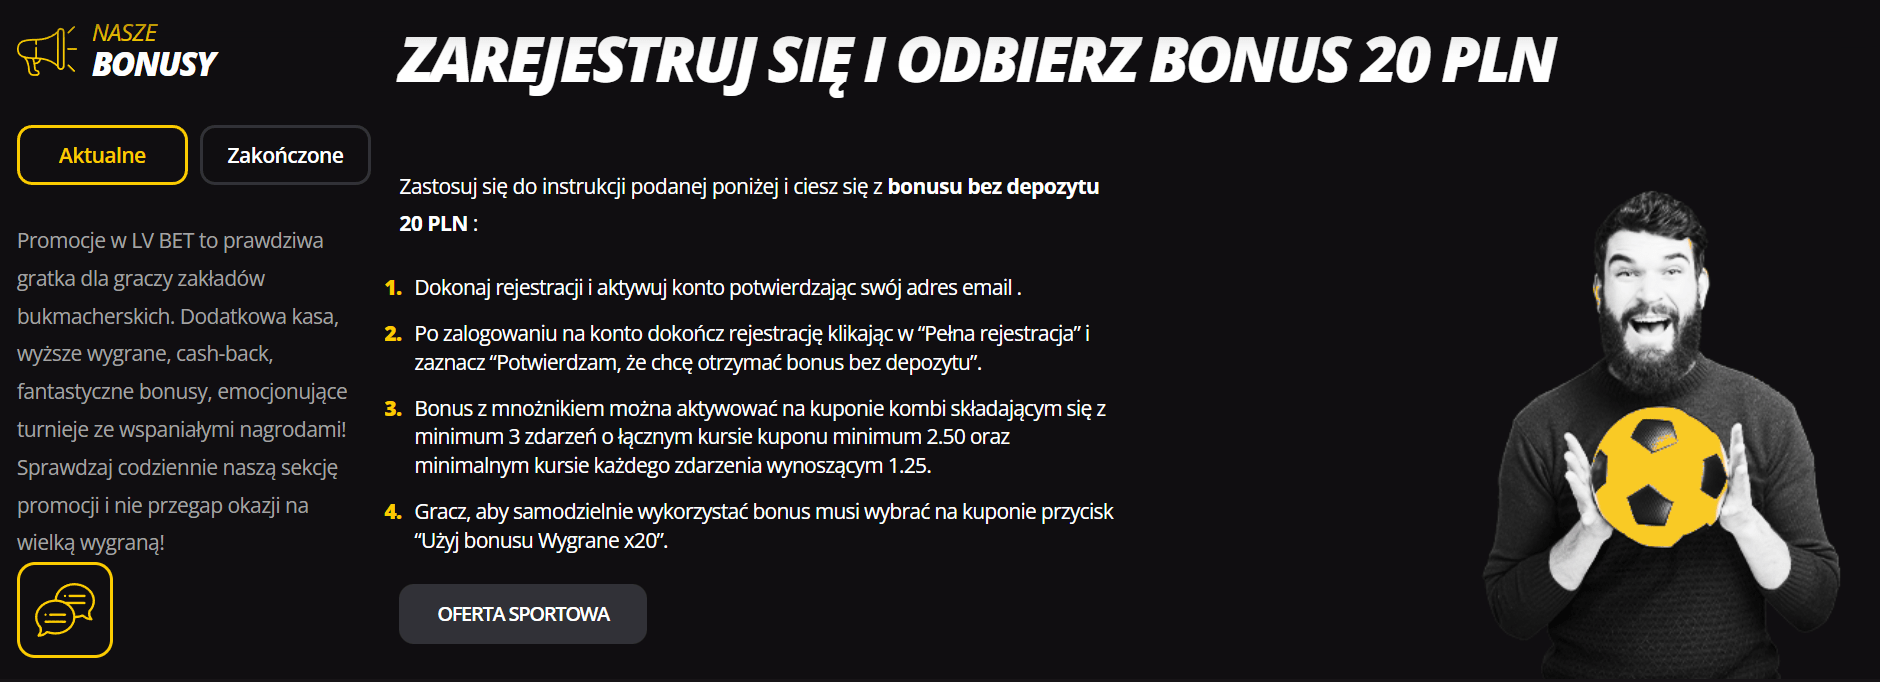 Bonus bez depozytu za rejestrację u bukmachera LVBet 20 PLN